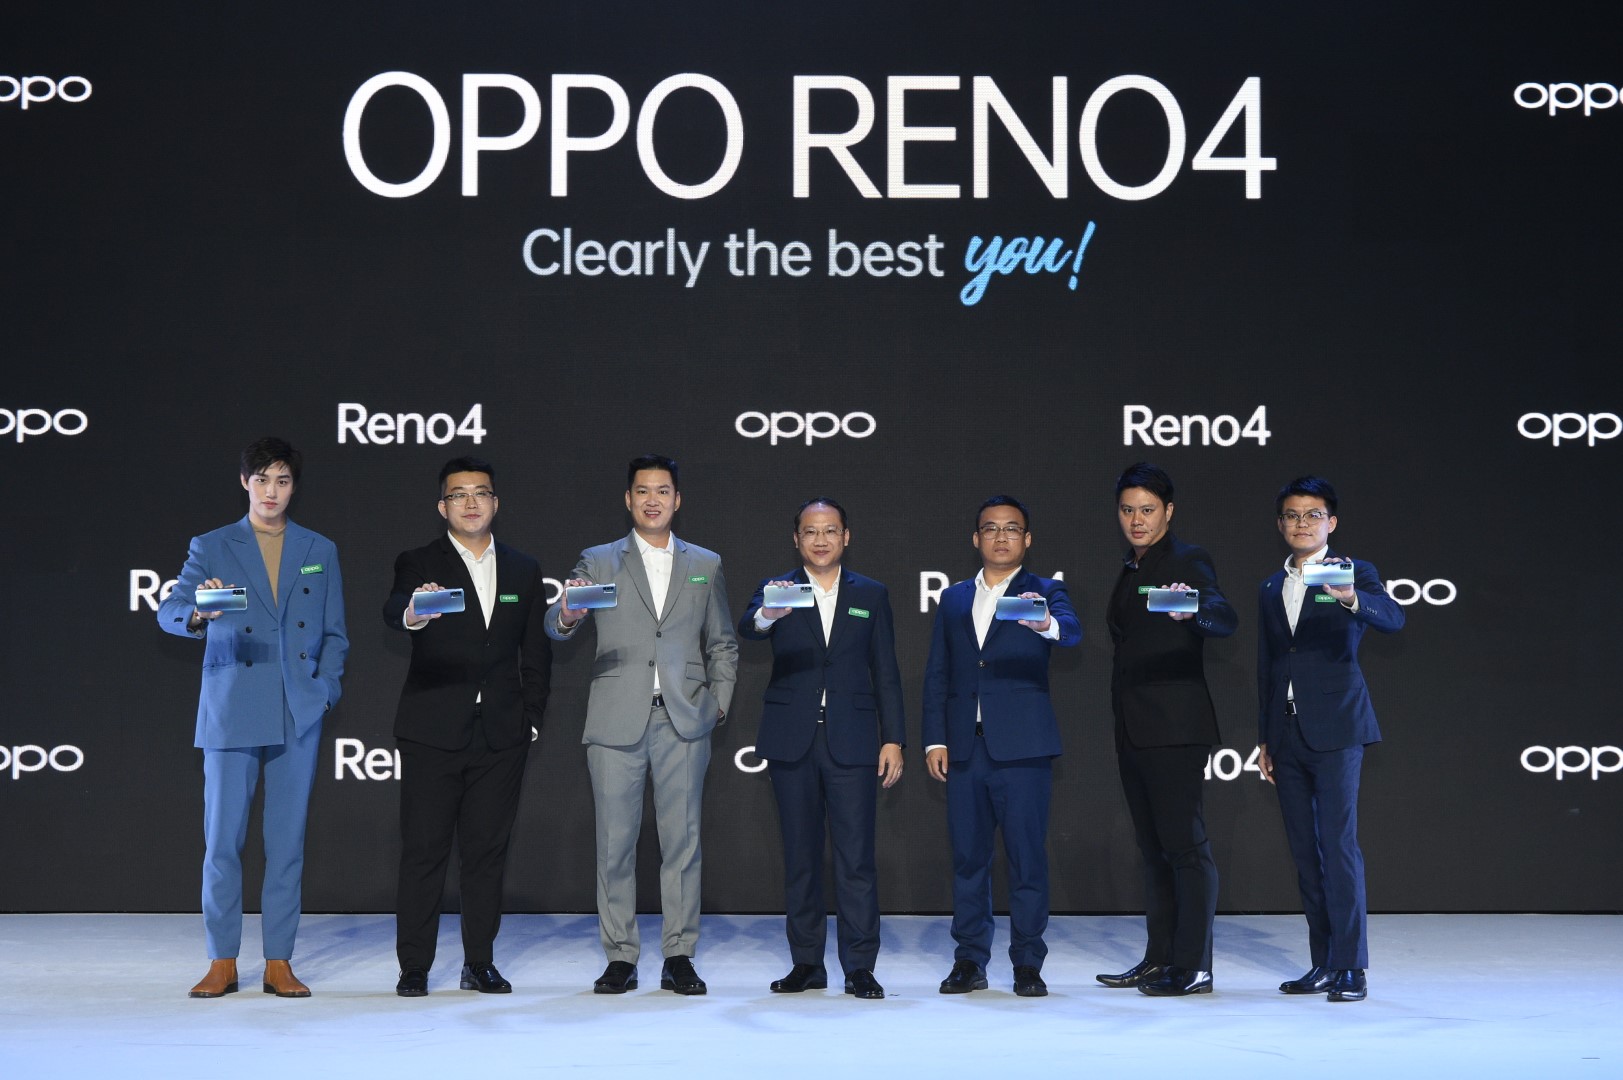 ภาพข่าว: ออปโป้ เปิดตัว OPPO Reno4 ราคา 11,990 บาท สุดยอดสมาร์ทโฟนมอบประสบการณ์การถ่ายรูปสวยชัดในสไตล์ที่เป็นคุณ